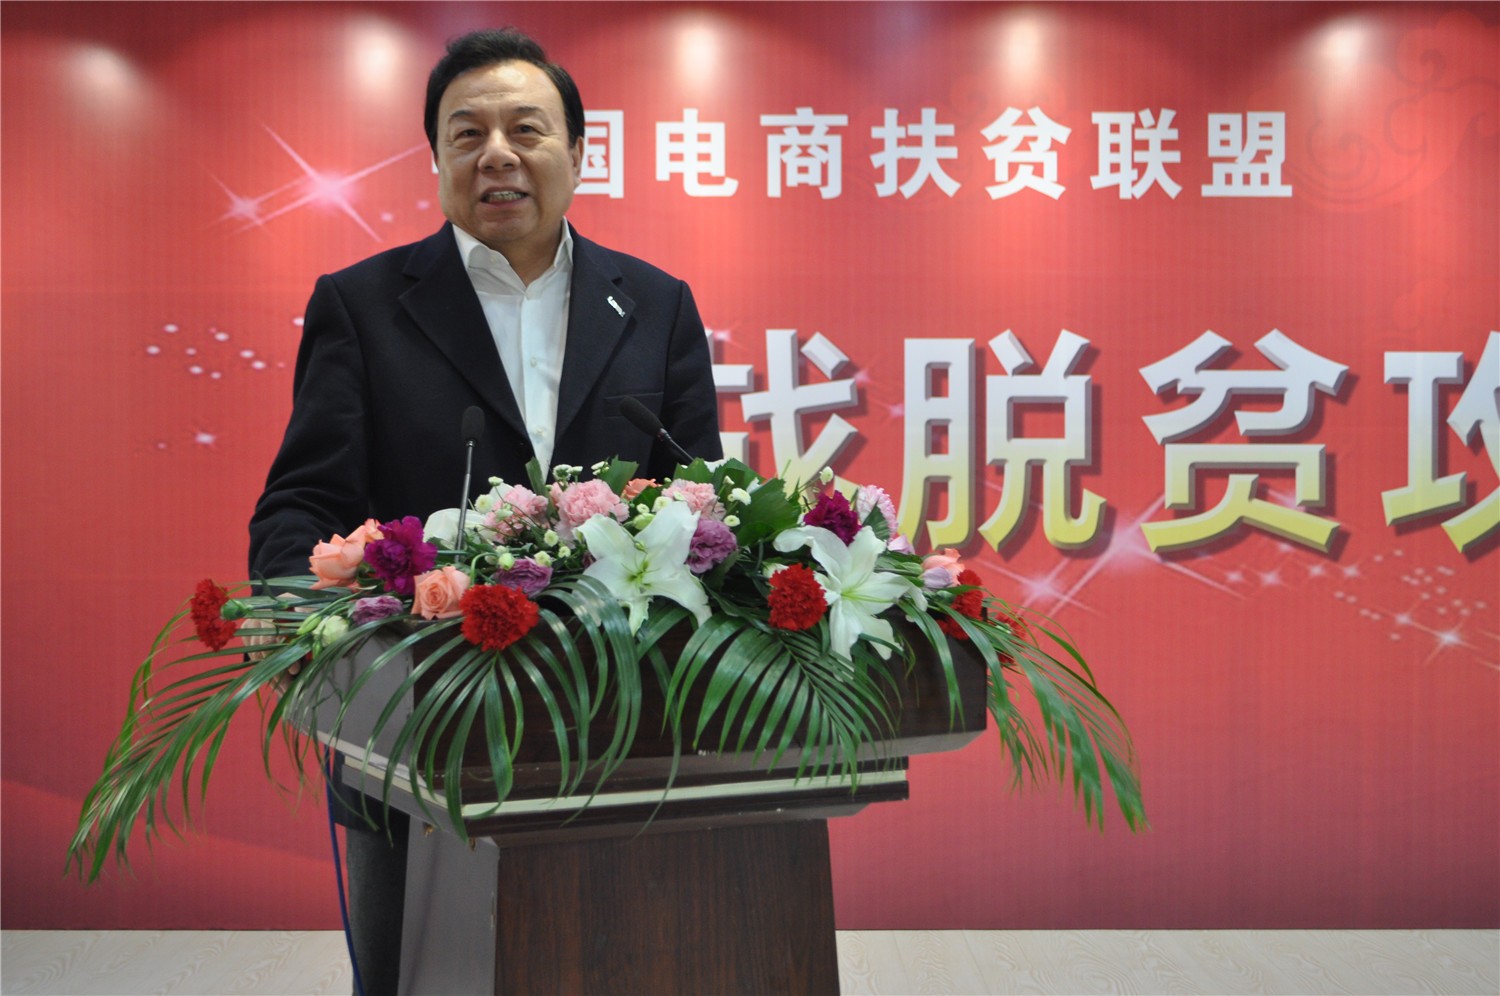 2、中国电商扶贫联盟主席李晓林出席并讲话.jpg